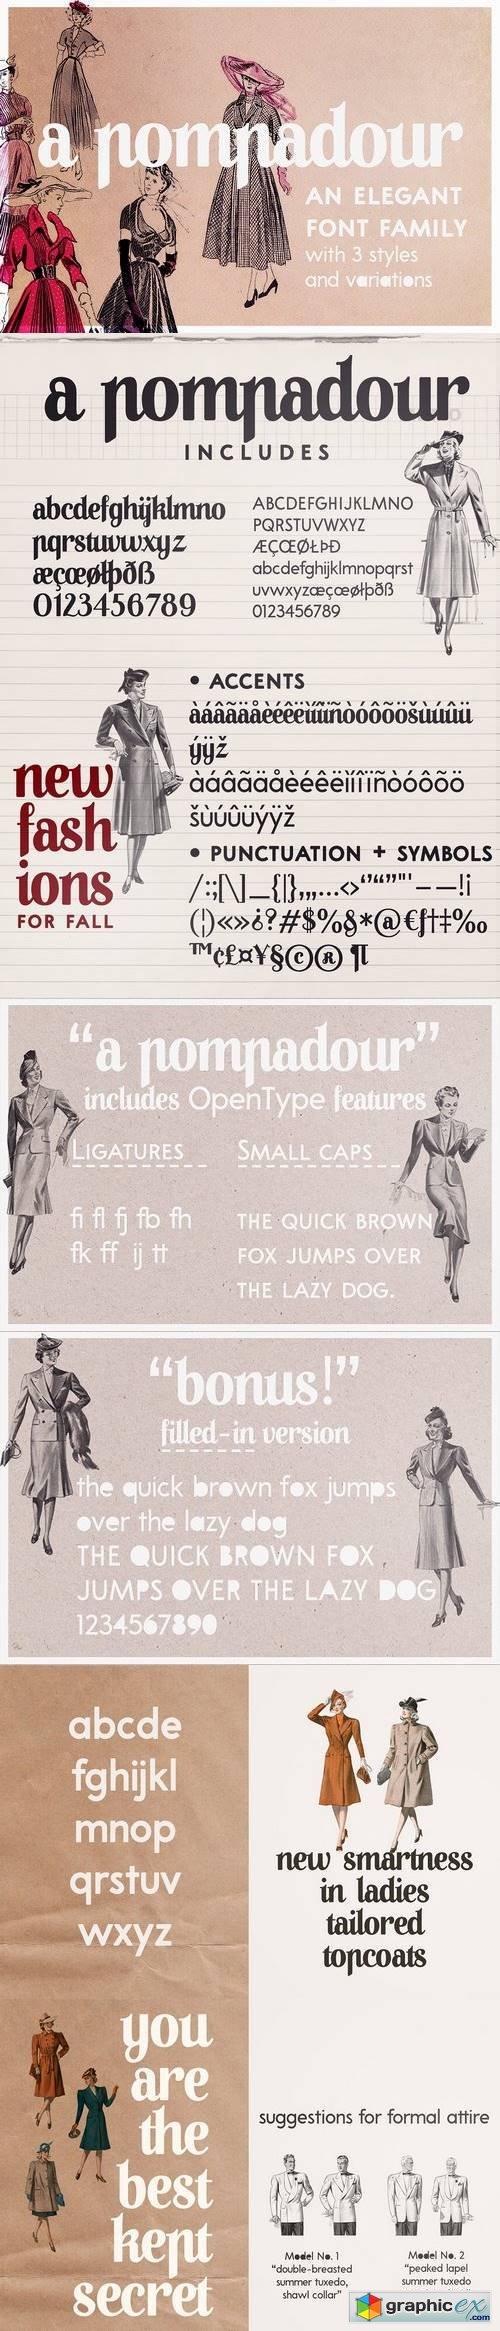 A Pompadour font | a font family